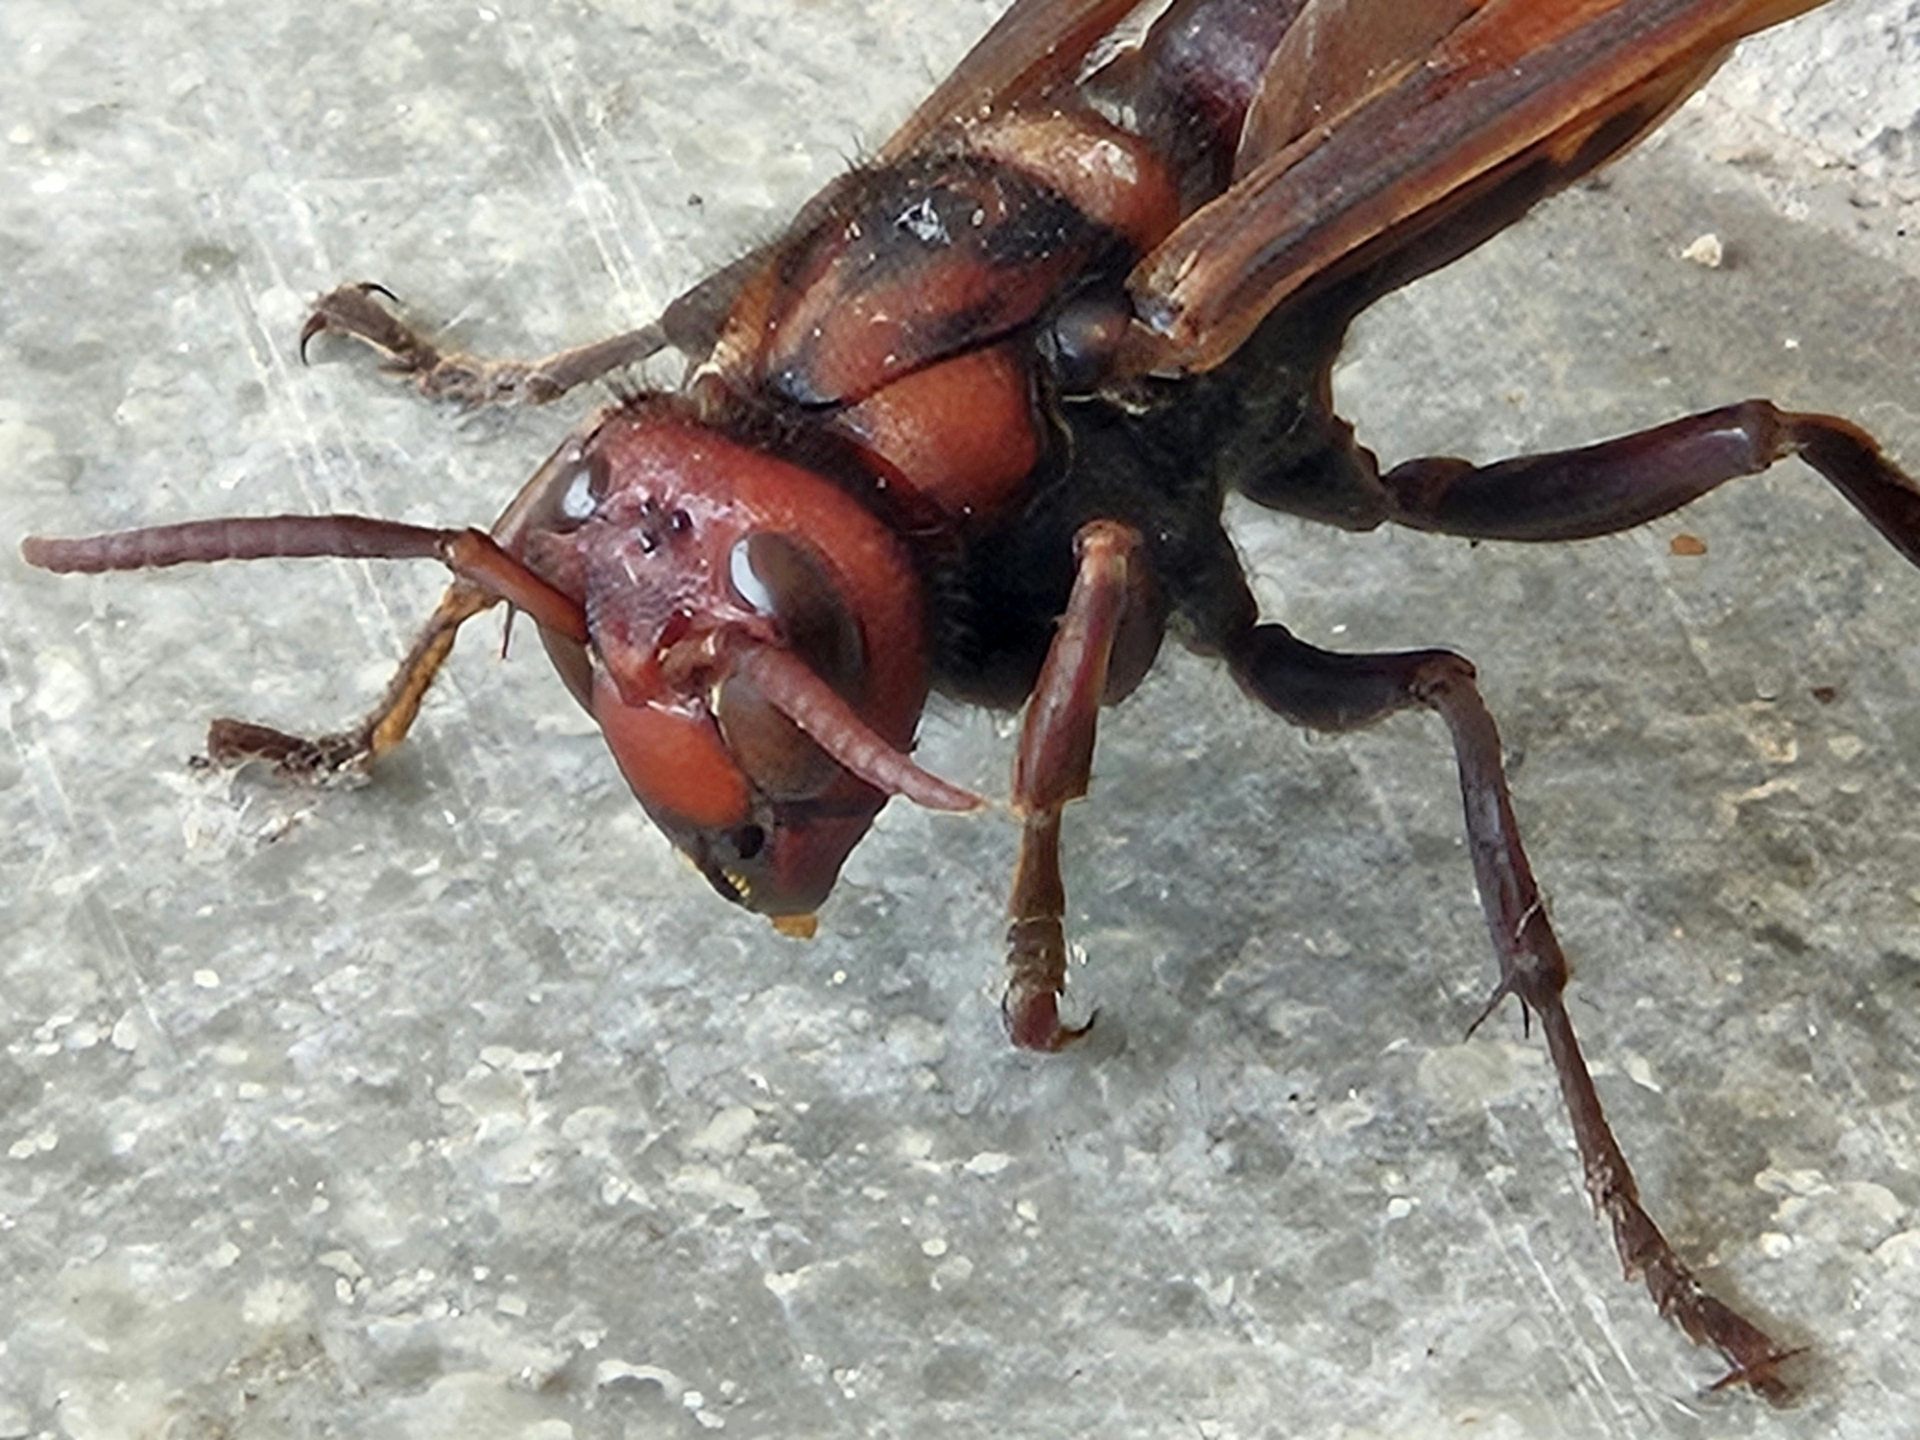 Житель Приморья оказался на грани смерти после нападения роя насекомых в гараже